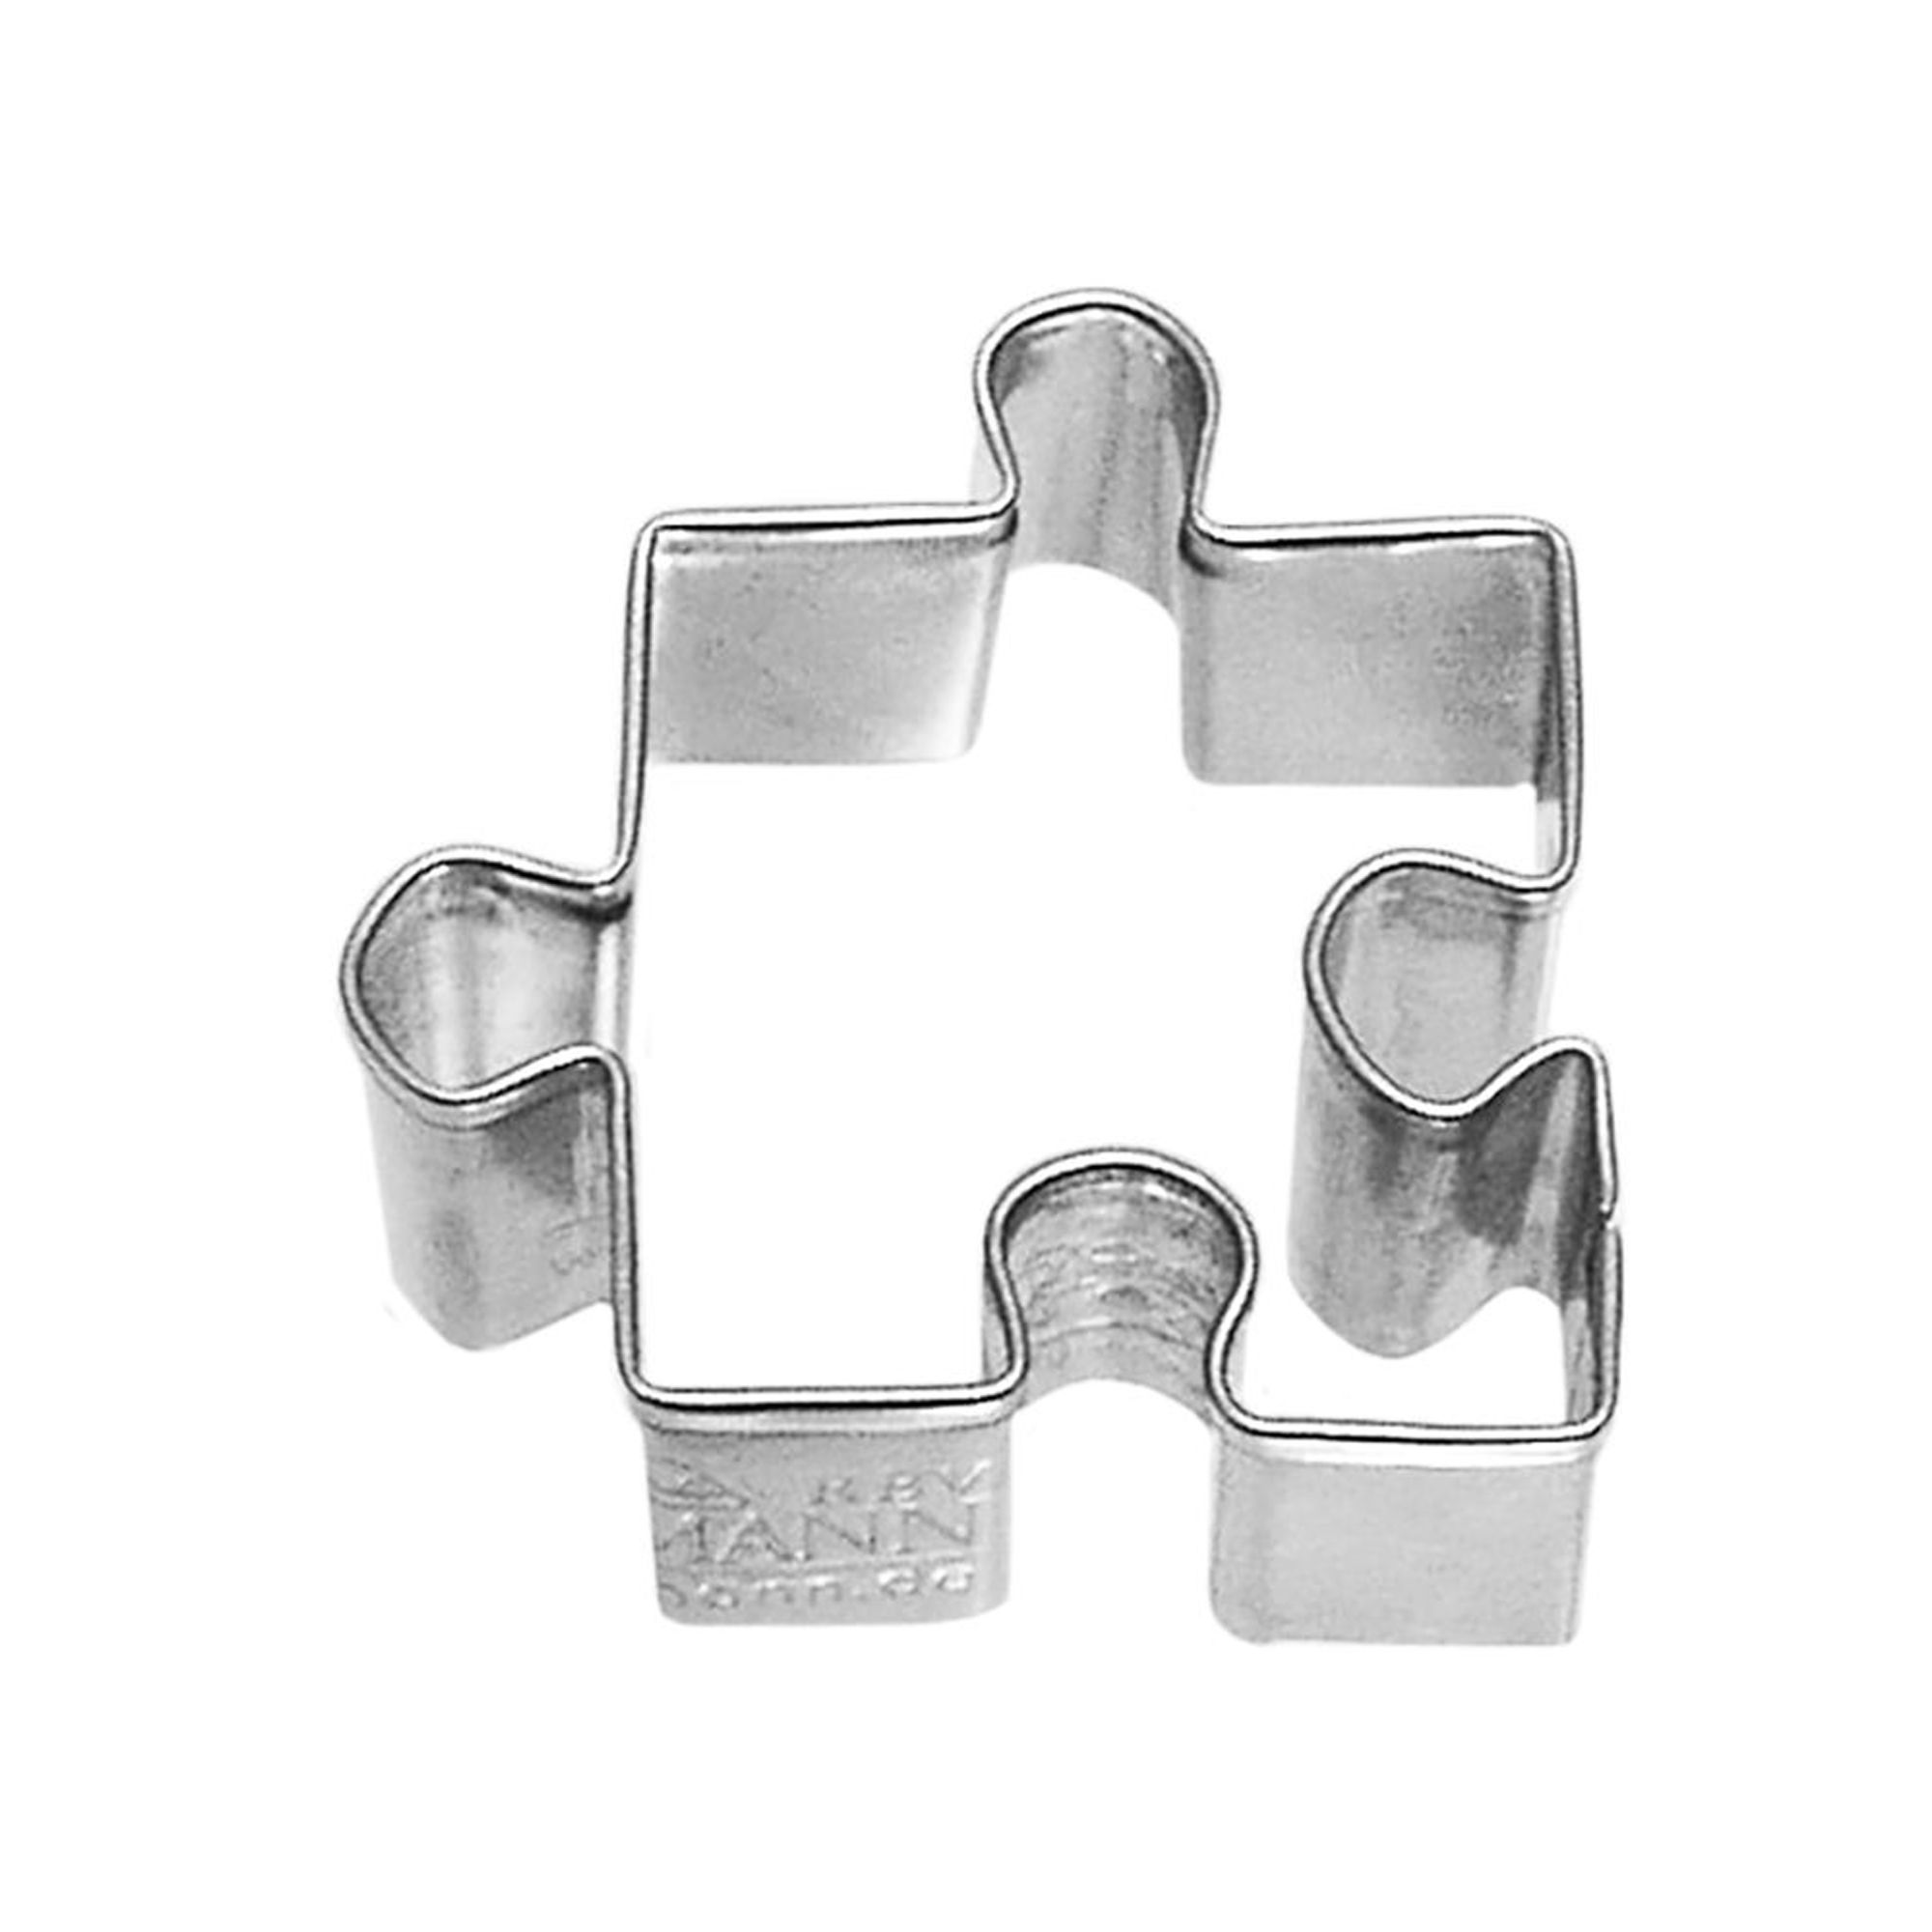 RBV Birkmann -  Puzzle piece cutter, small, 4 cm